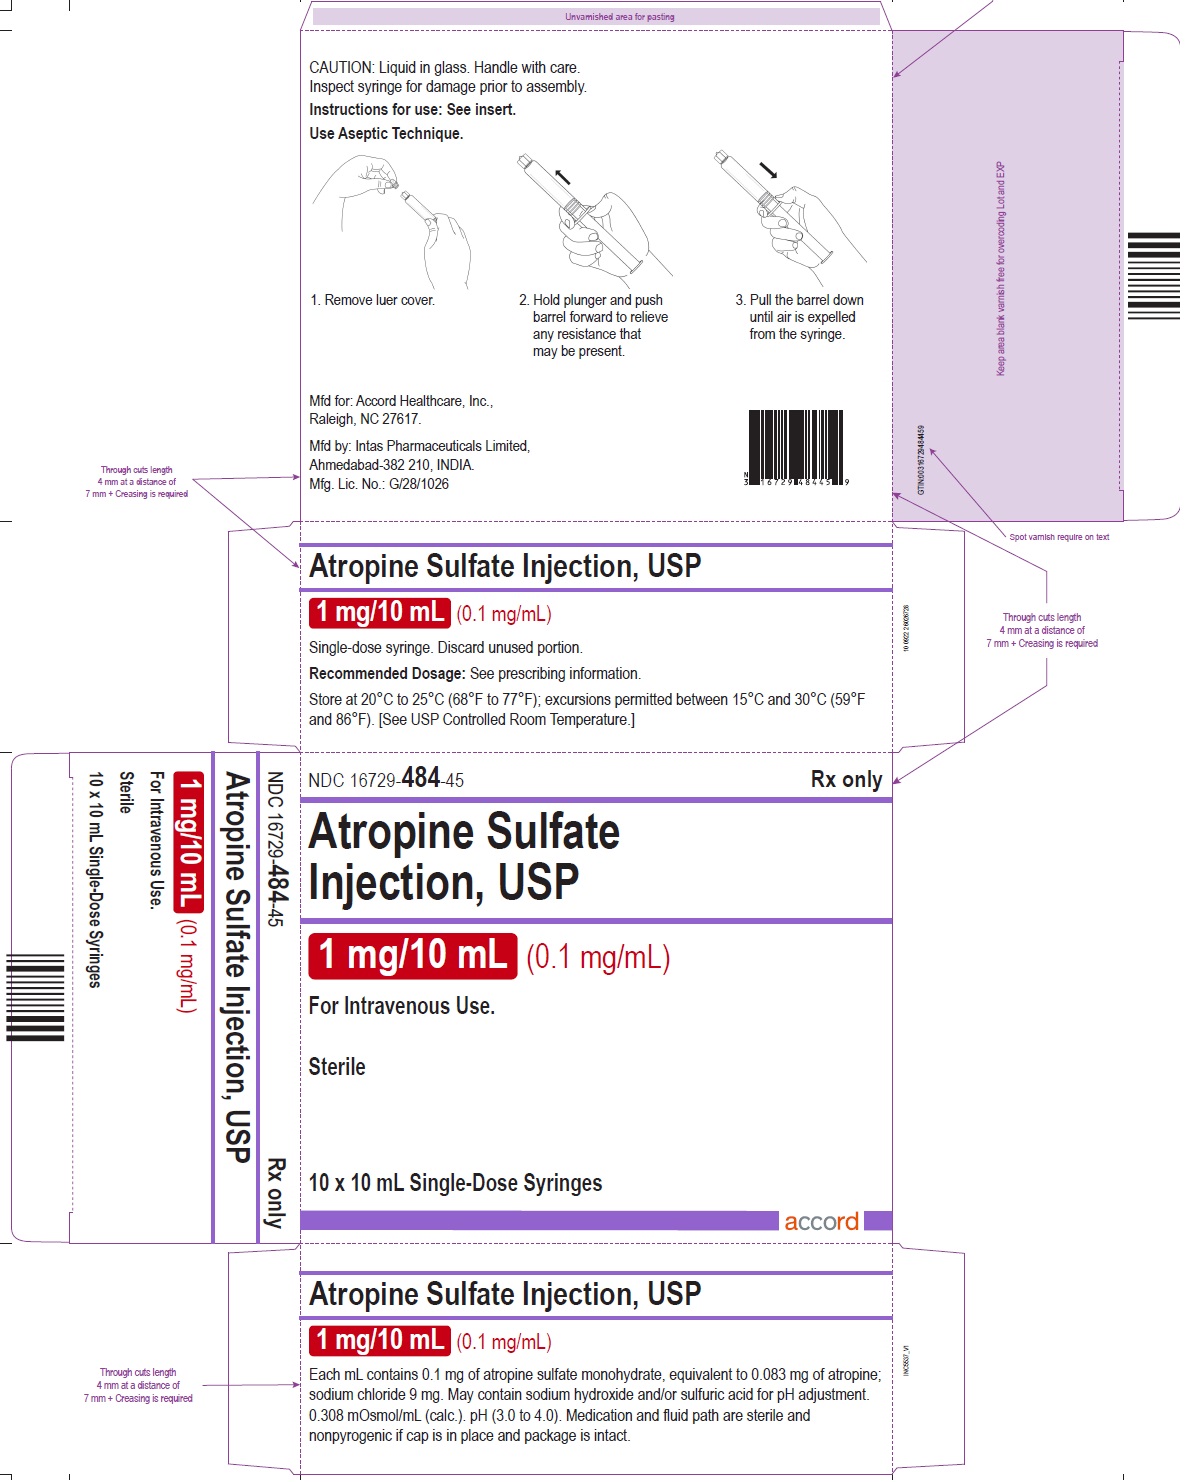 PRINCIPAL DISPLAY PANEL - 10 x 10 mL Syringe Carton